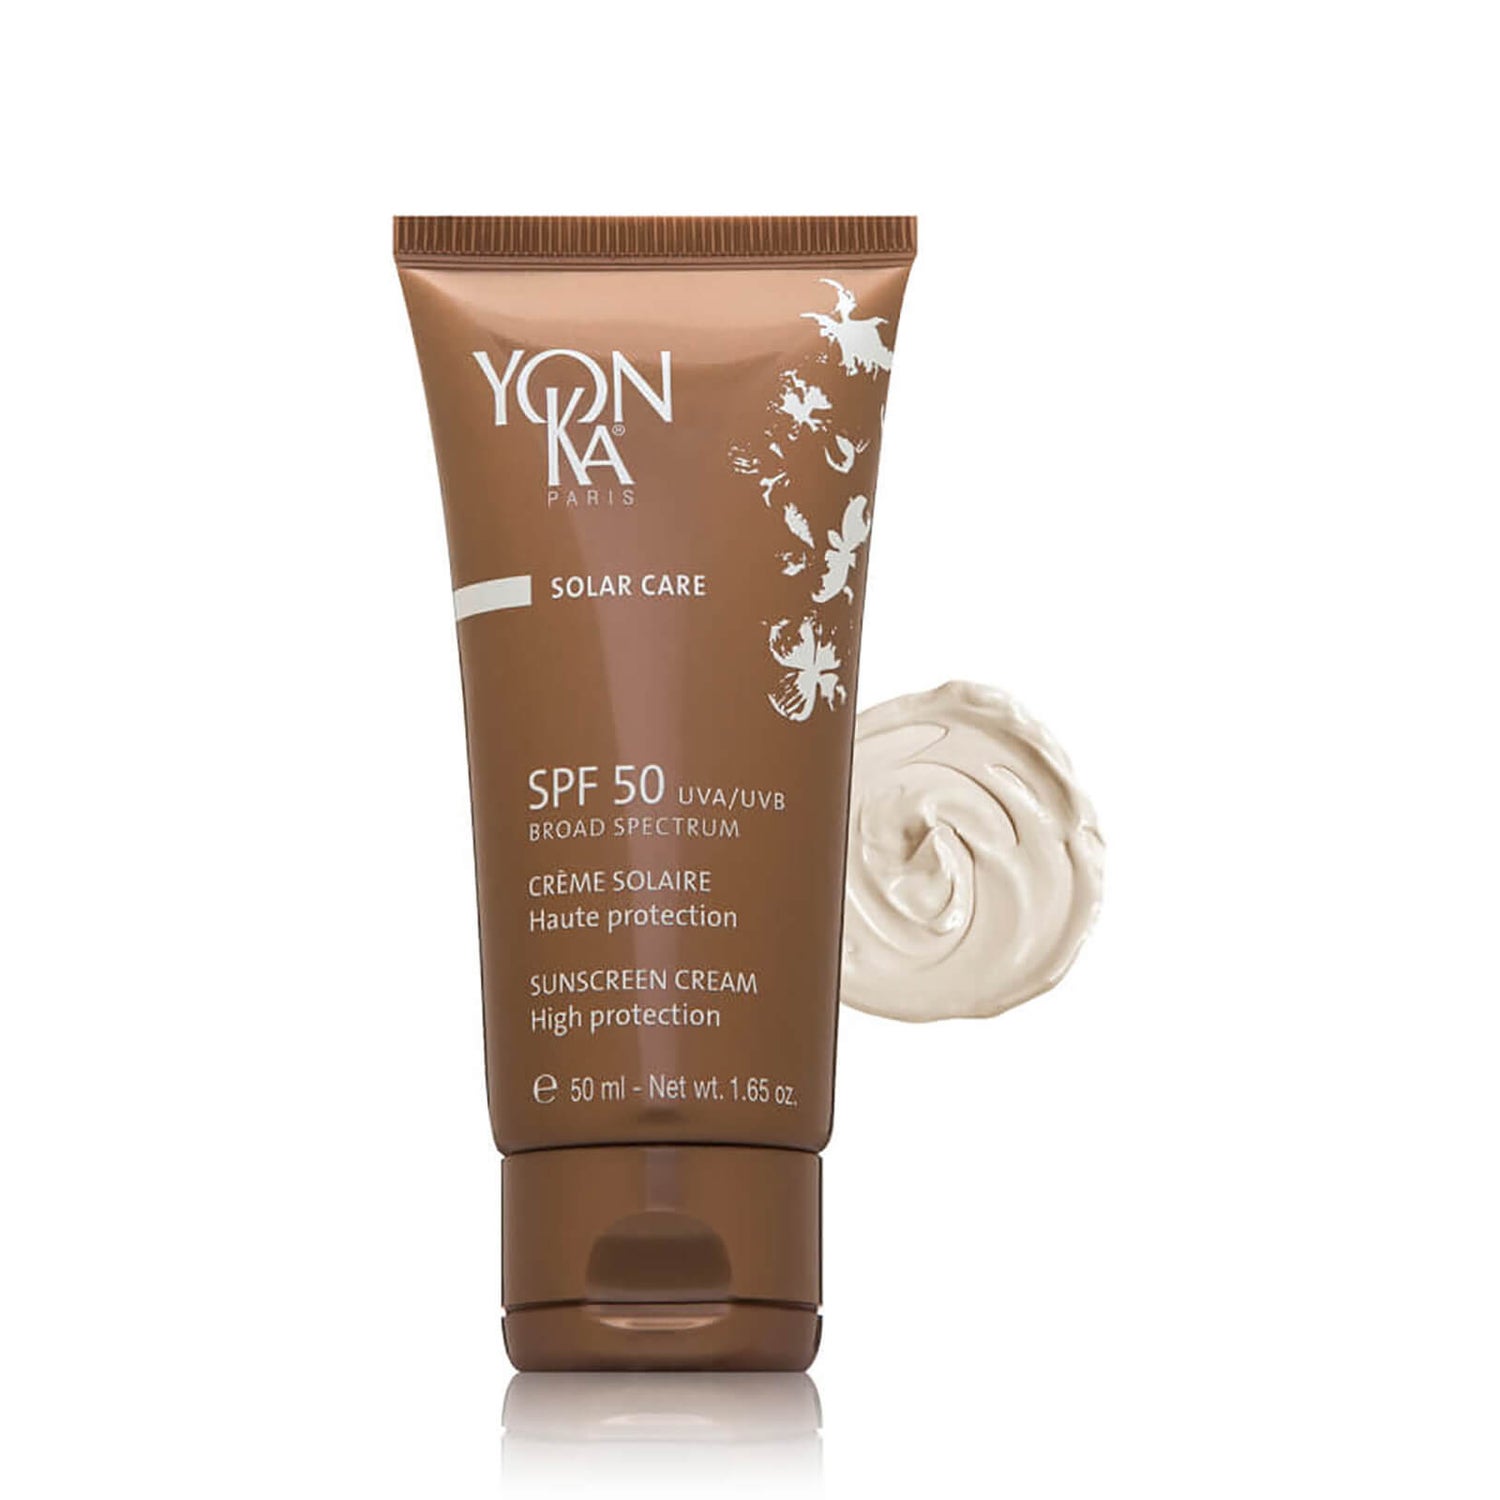 Yon-Ka Paris Skincare Solar Care Sunscreen Cream SPF 50 (1.65 oz.)